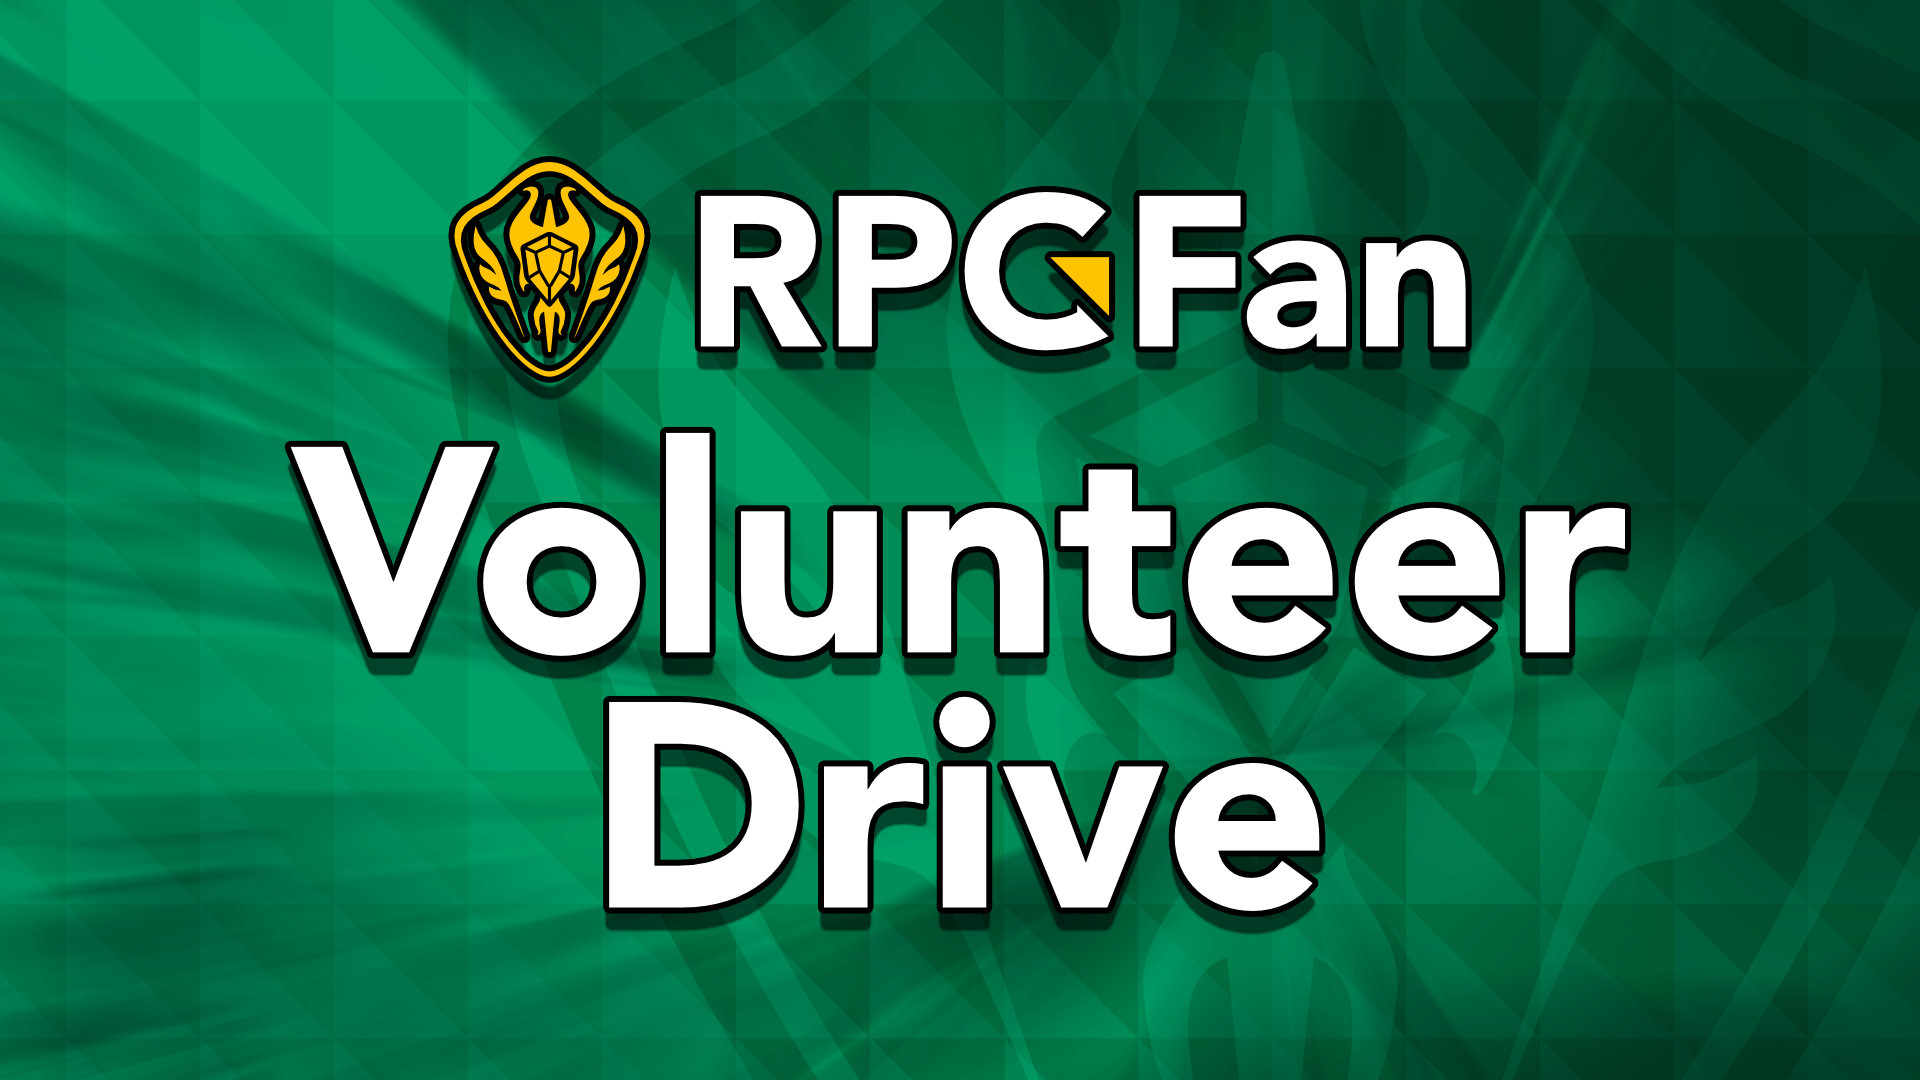 RPGFan Volunteer Drive